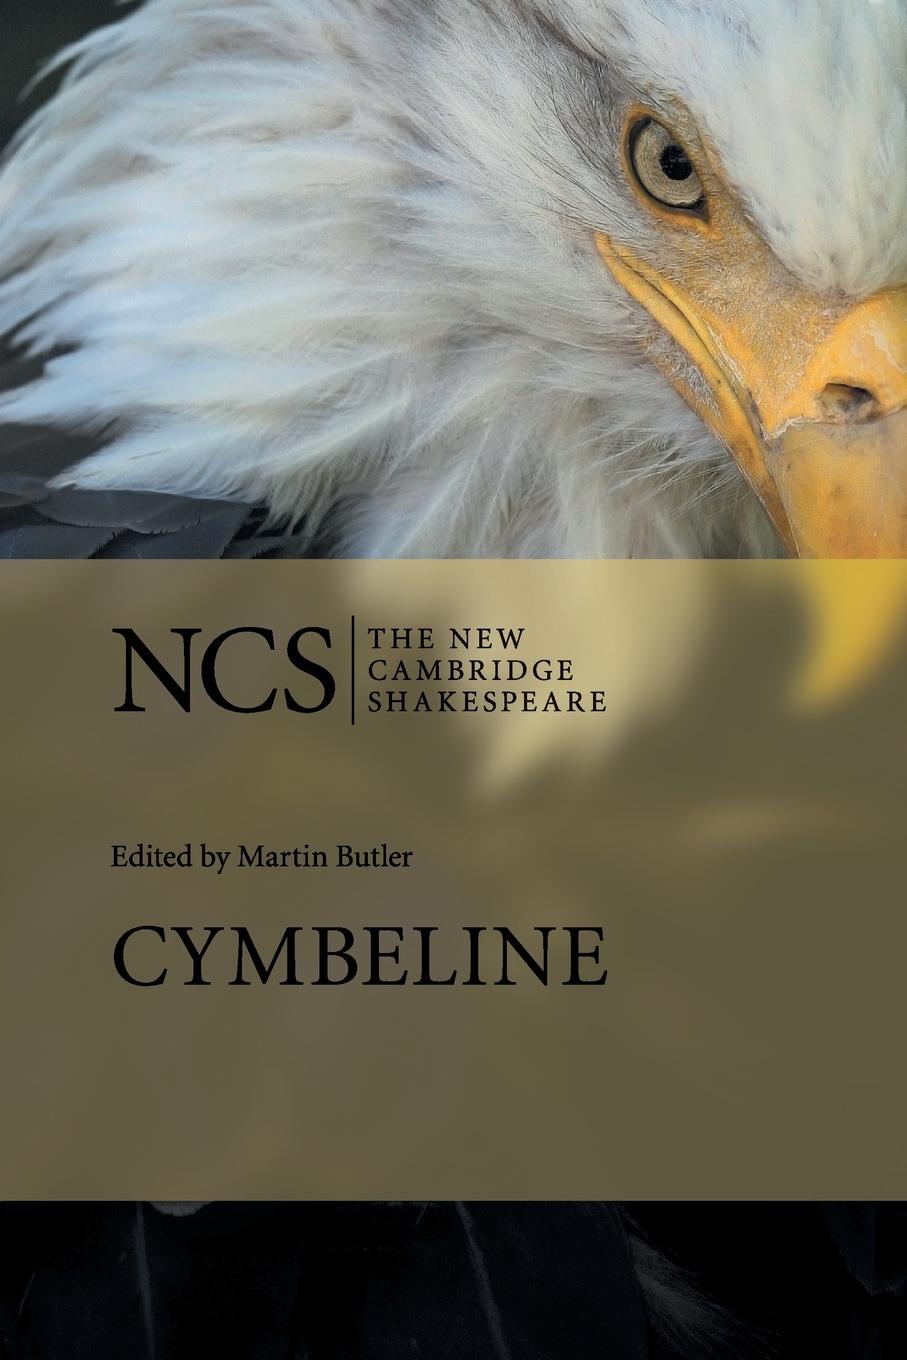 NCS / Cymbeline / William Shakespeare / Taschenbuch / Paperback / Englisch / 2018 / Cambridge University Press / EAN 9780521296946 - Shakespeare, William